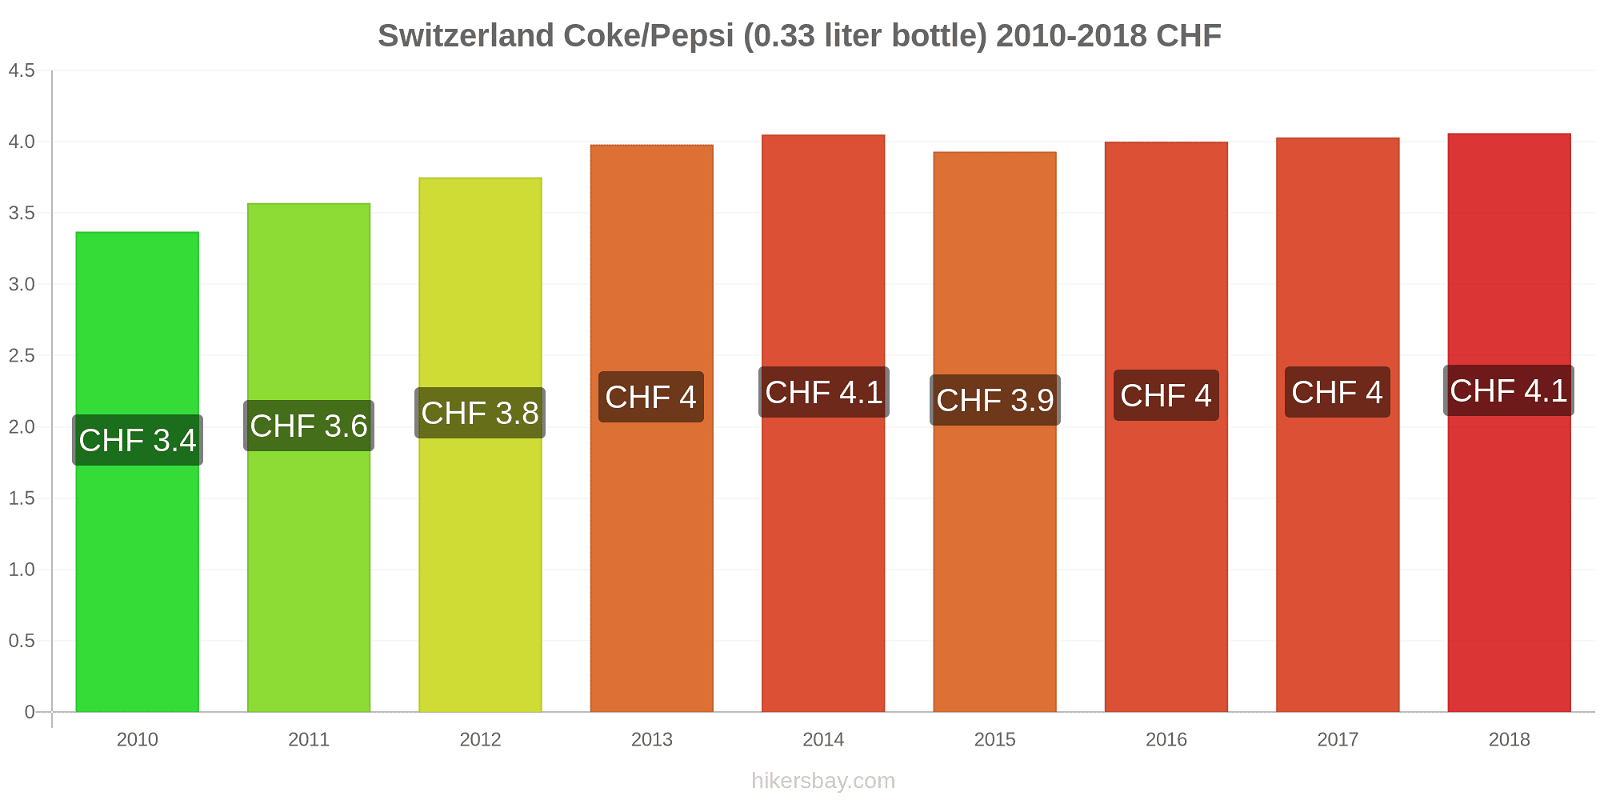 Switzerland price changes Coke/Pepsi (0.33 liter bottle) hikersbay.com